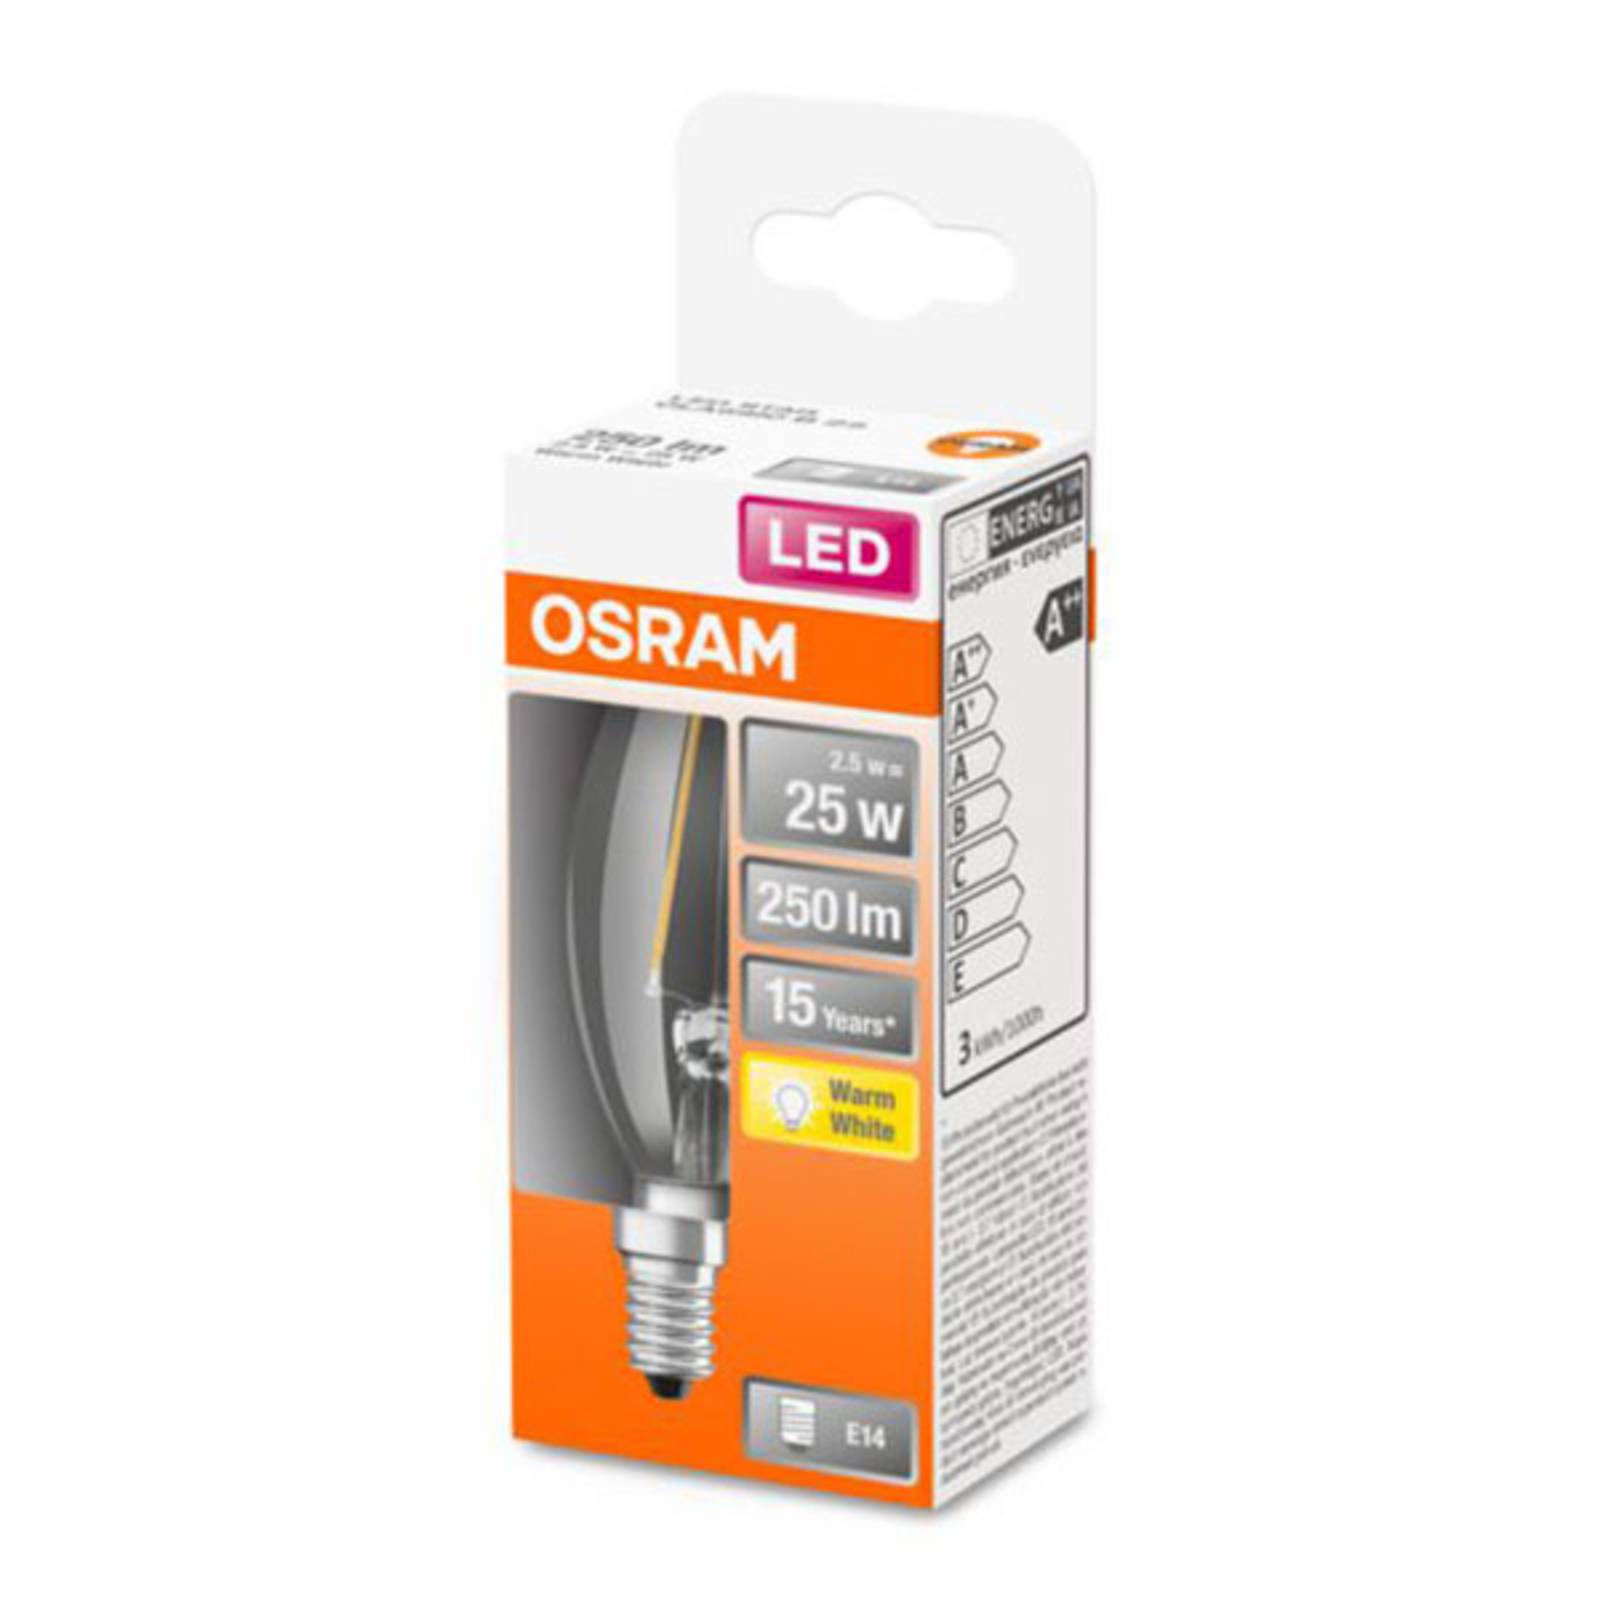 OSRAM Classic B LED-Lampe E14 2,5W 2.700K klar